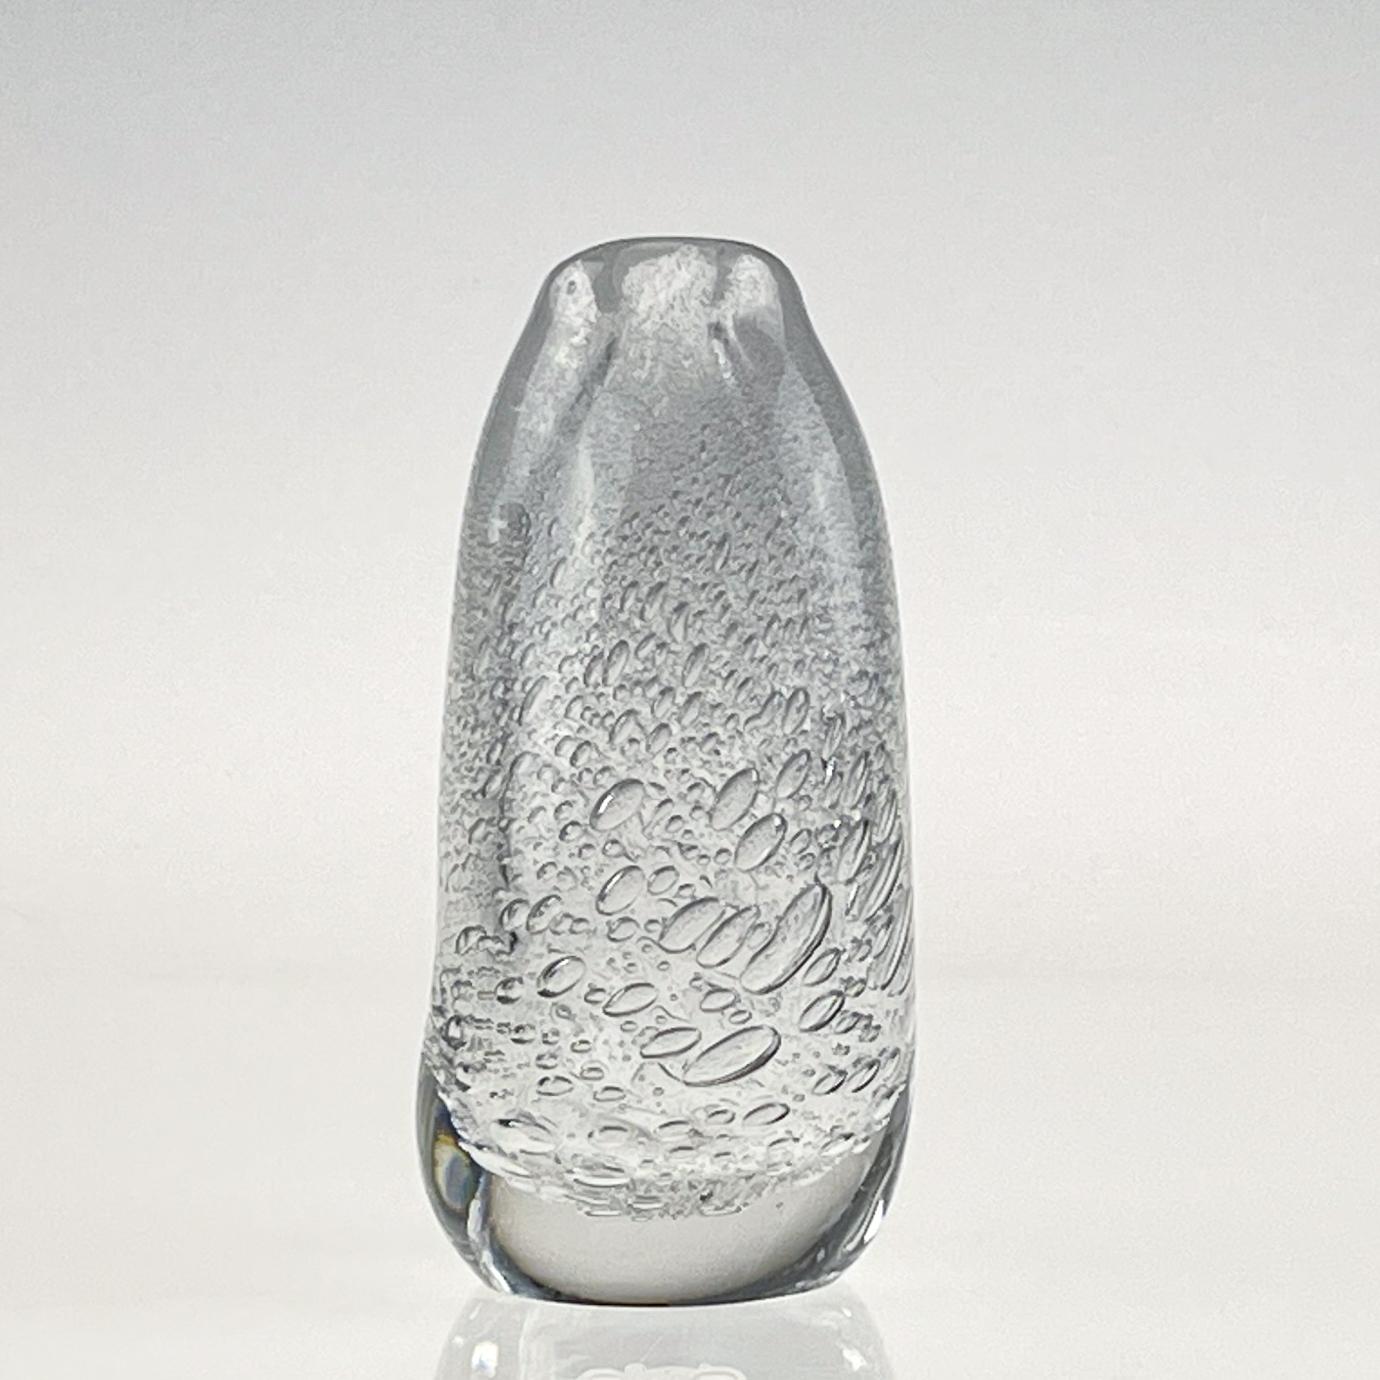 Scandinavian Modern Tapio Wirkkala Crystal Glass Art Vase Handblown Iittala 1